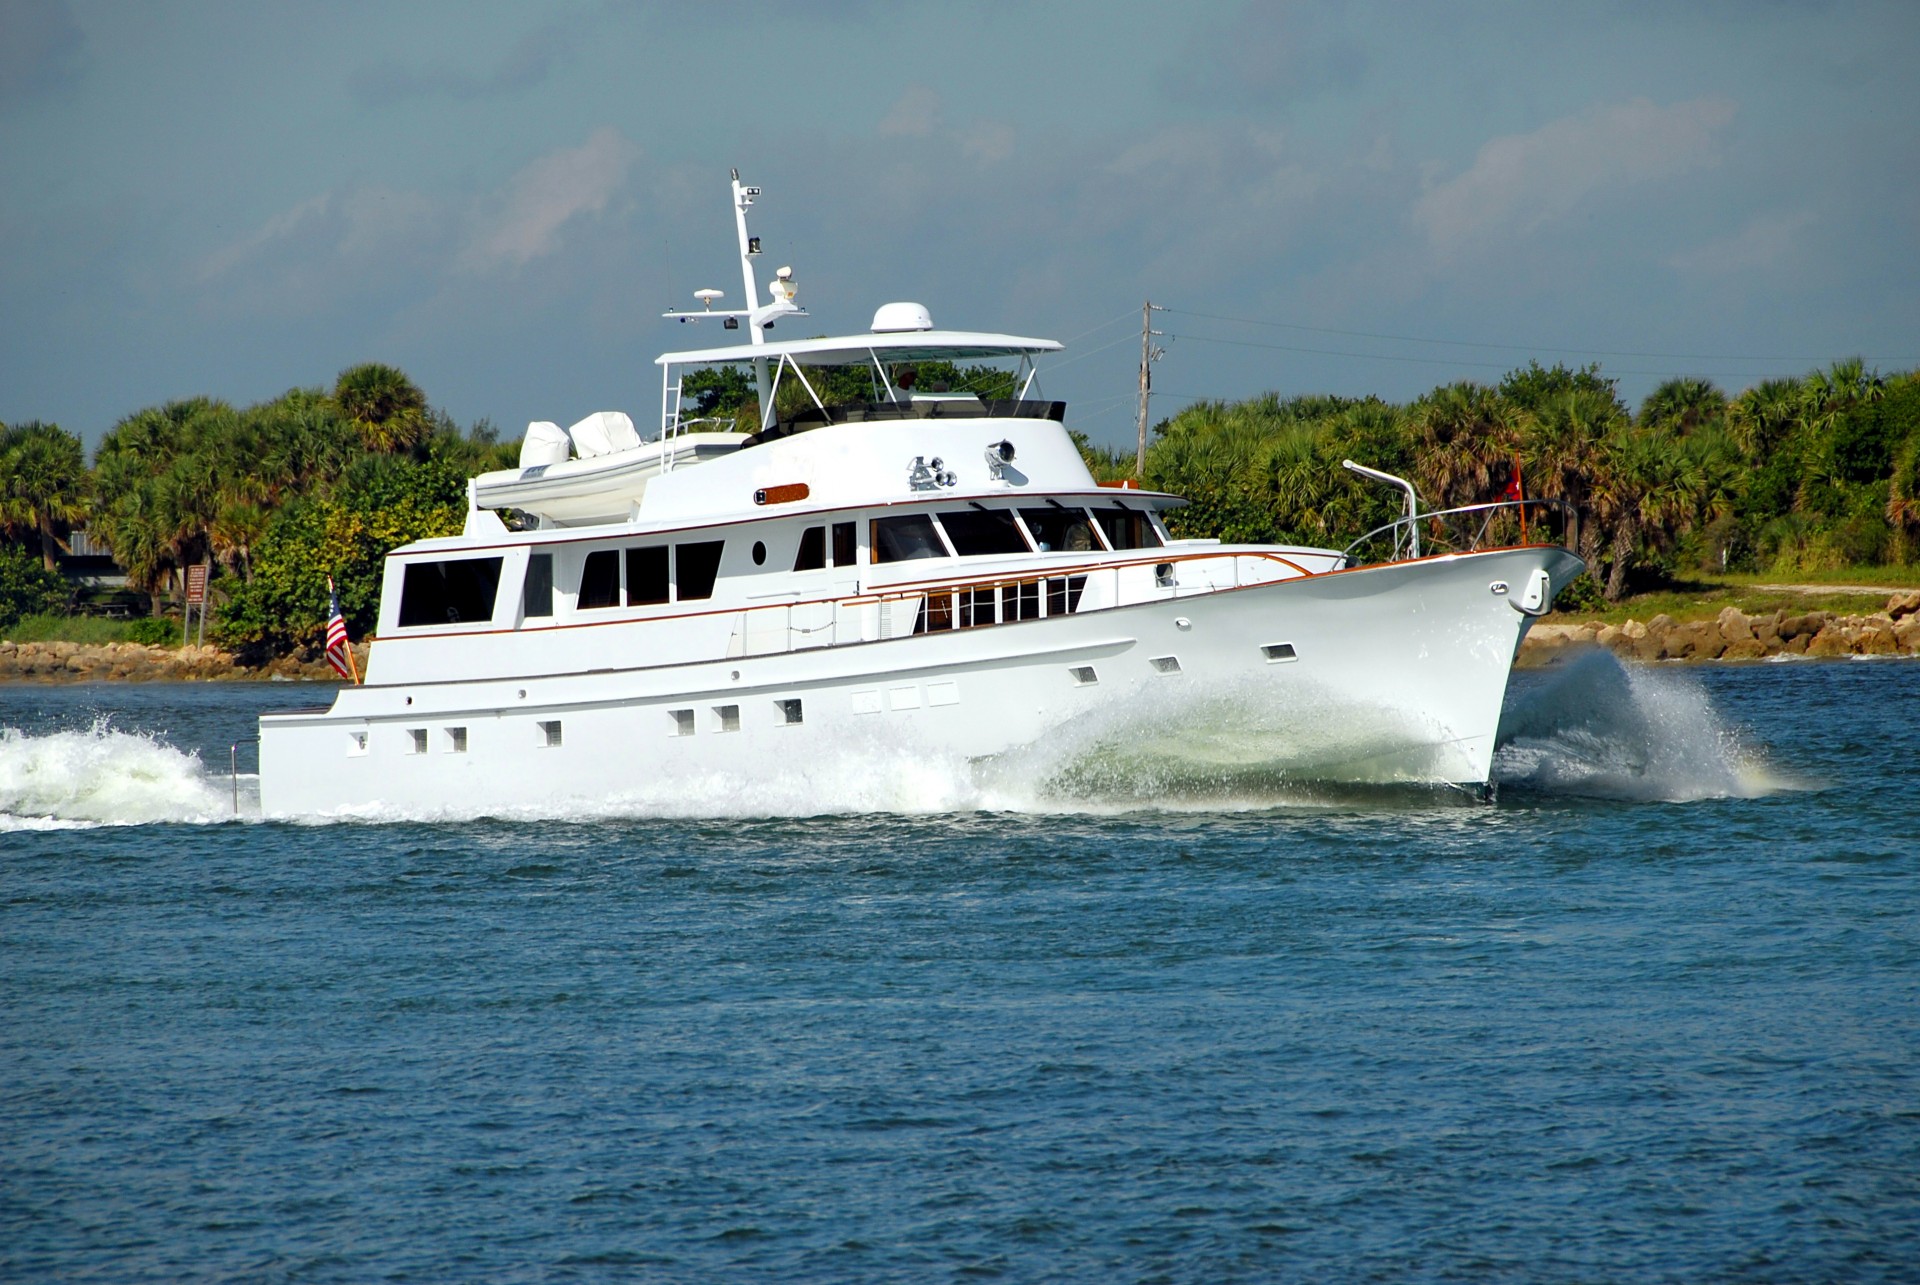 yacht luxury boat free photo